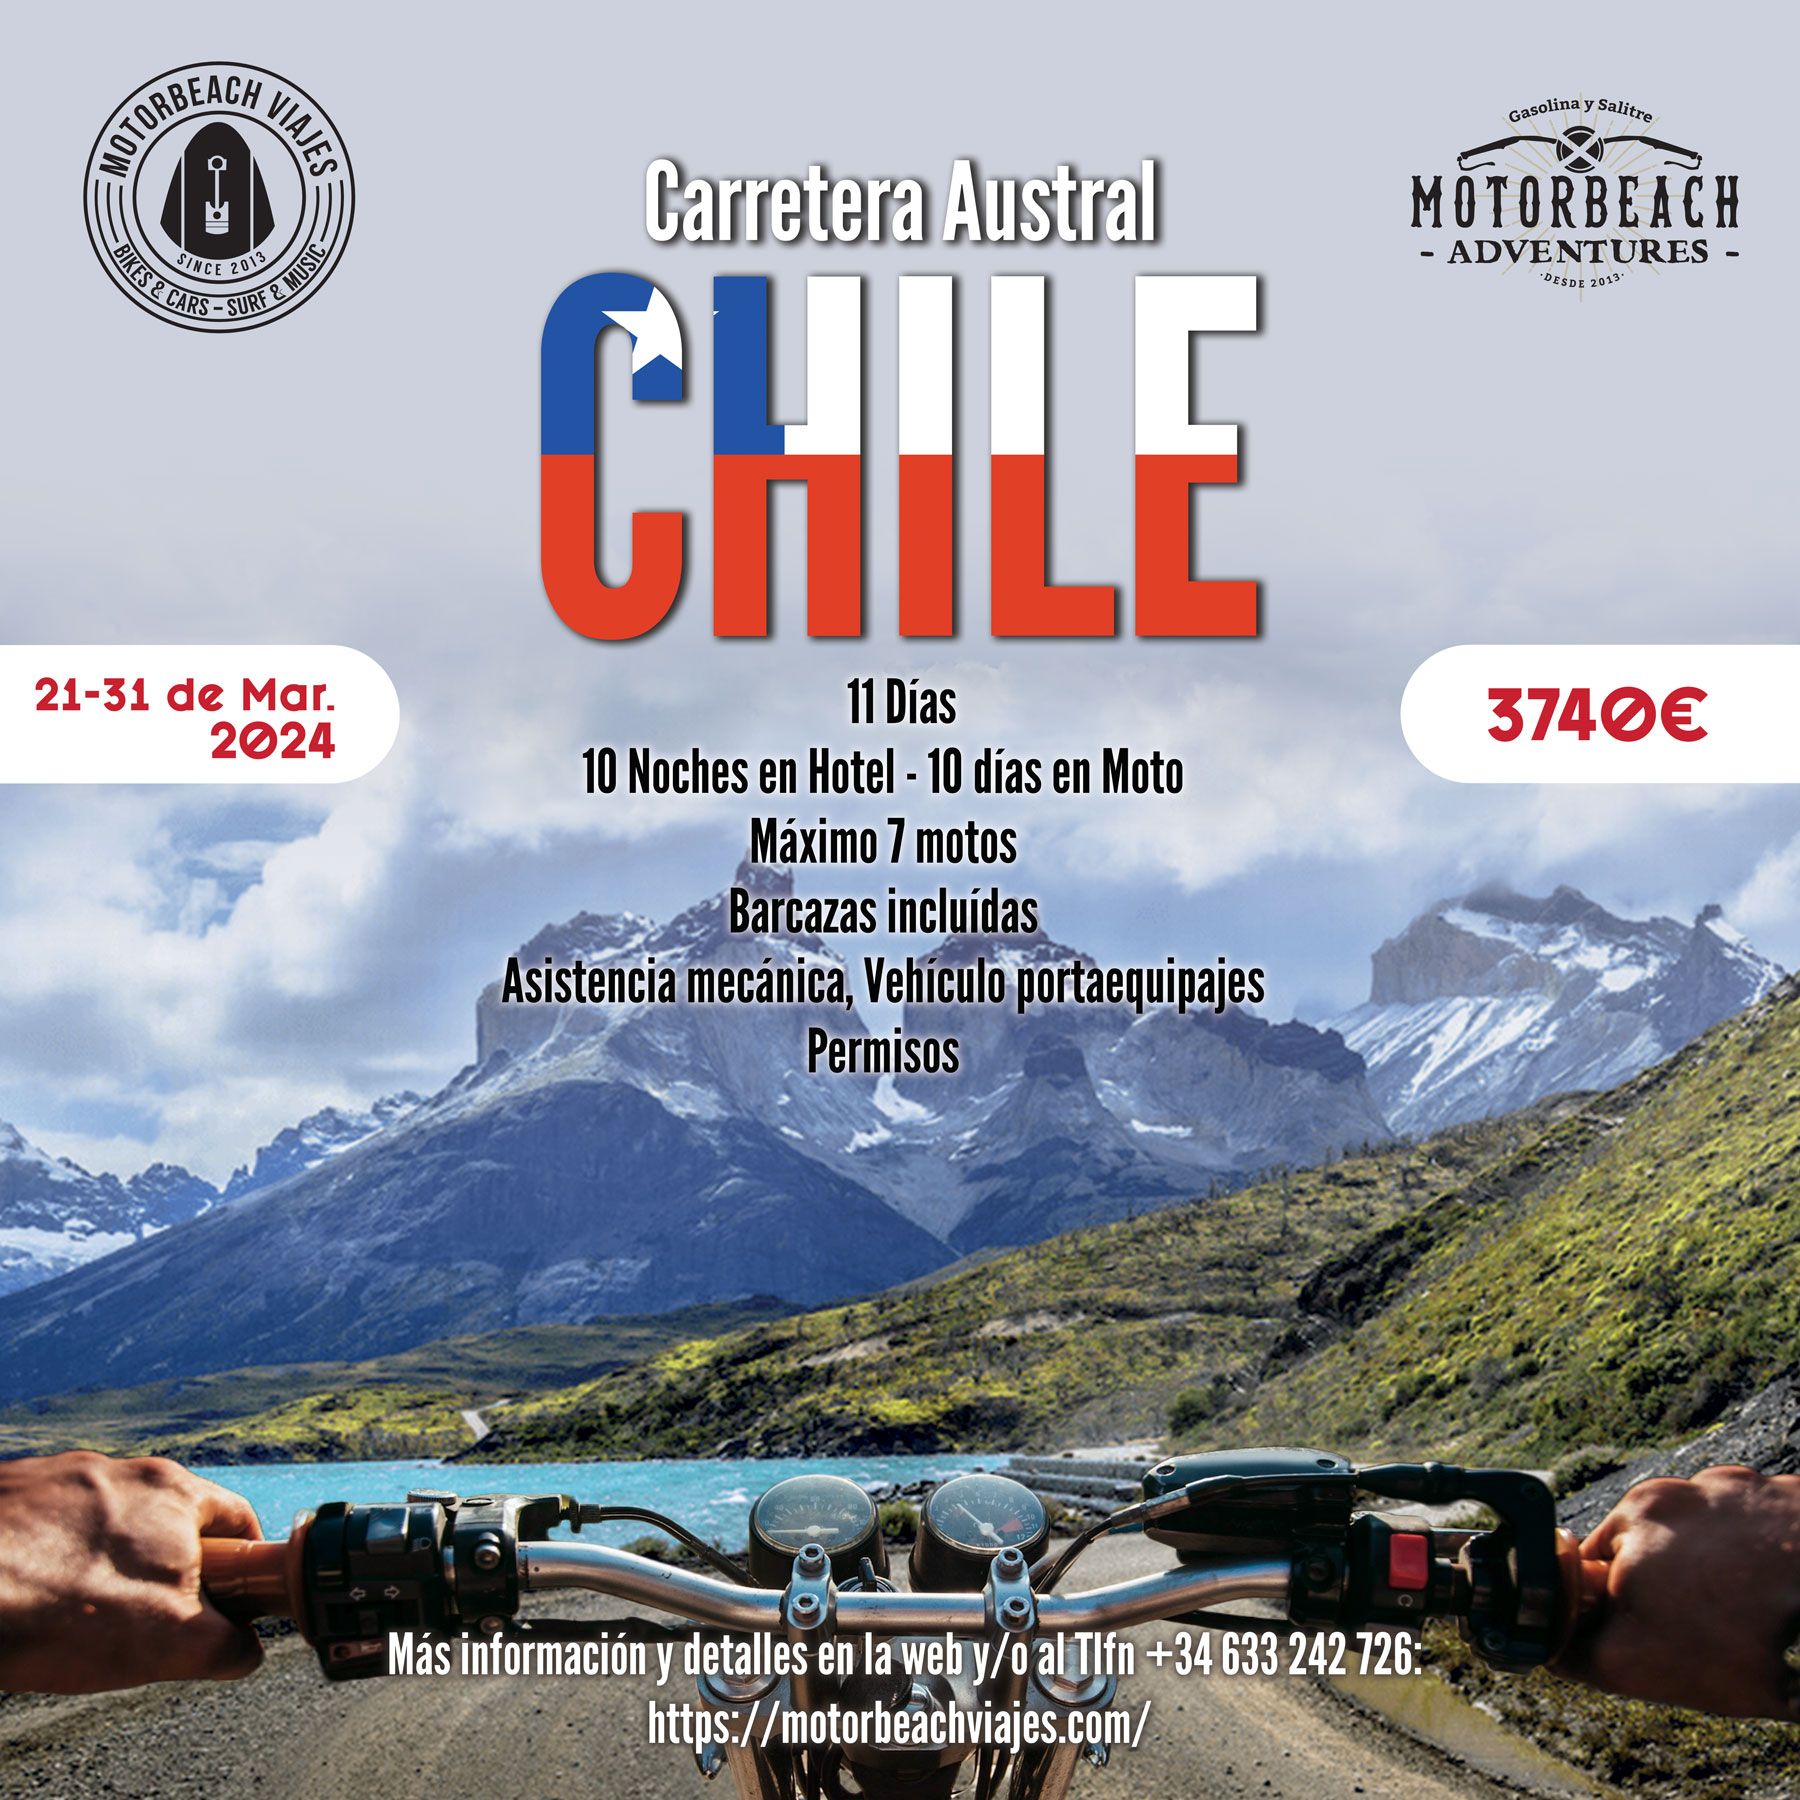 En este momento estás viendo Carretera Austral en moto, Patagonia – Chile.